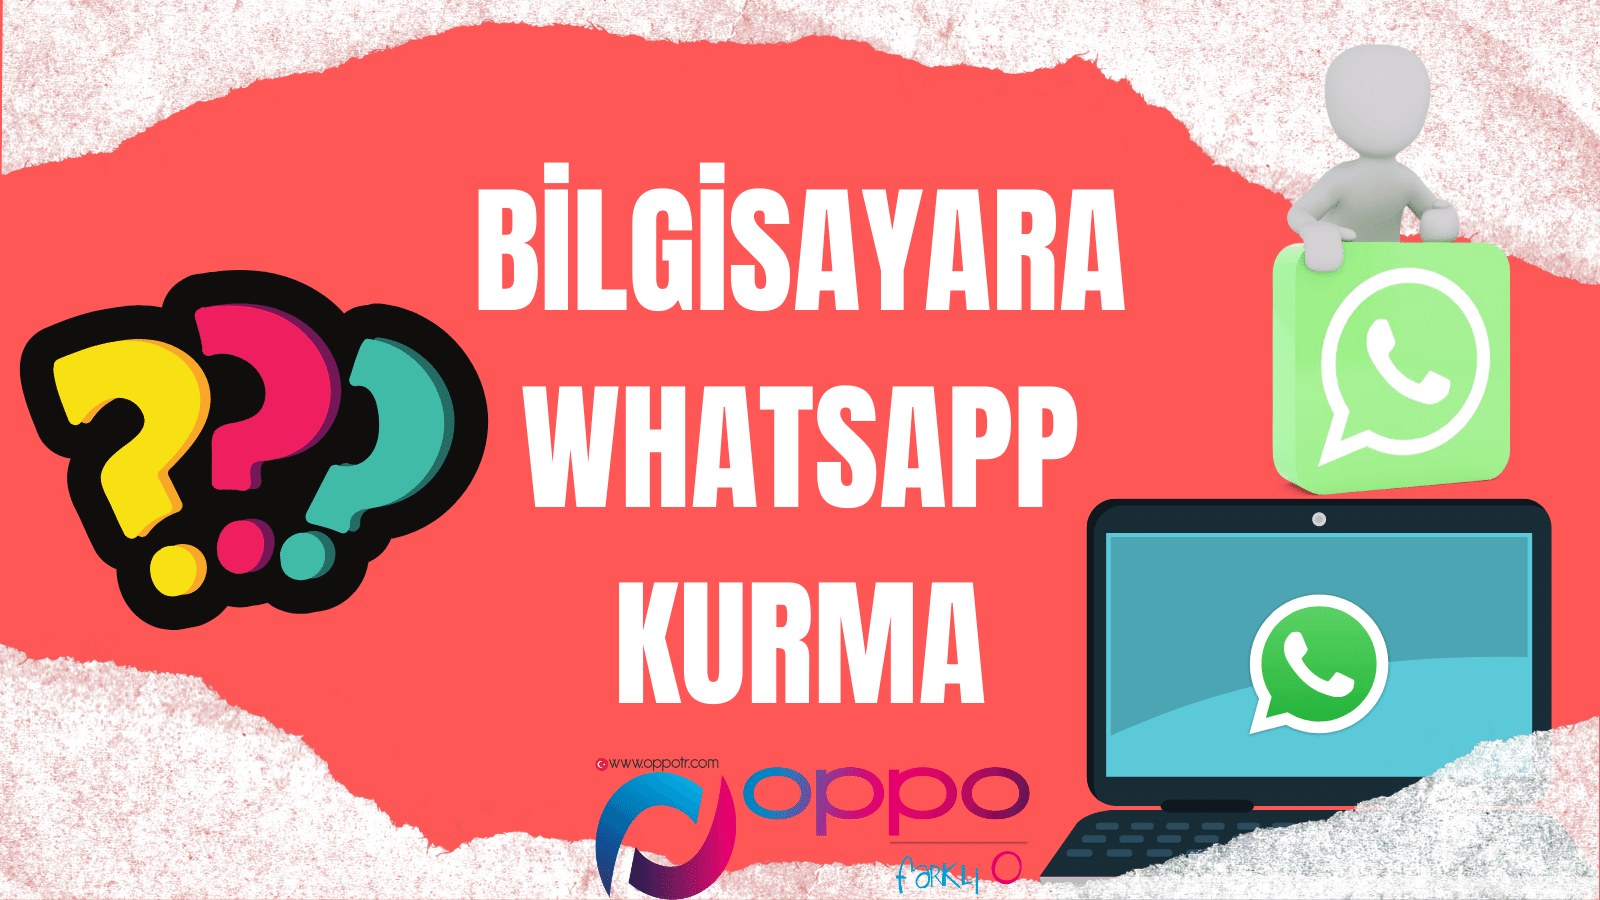 Bilgisayara Whatsapp Kurma